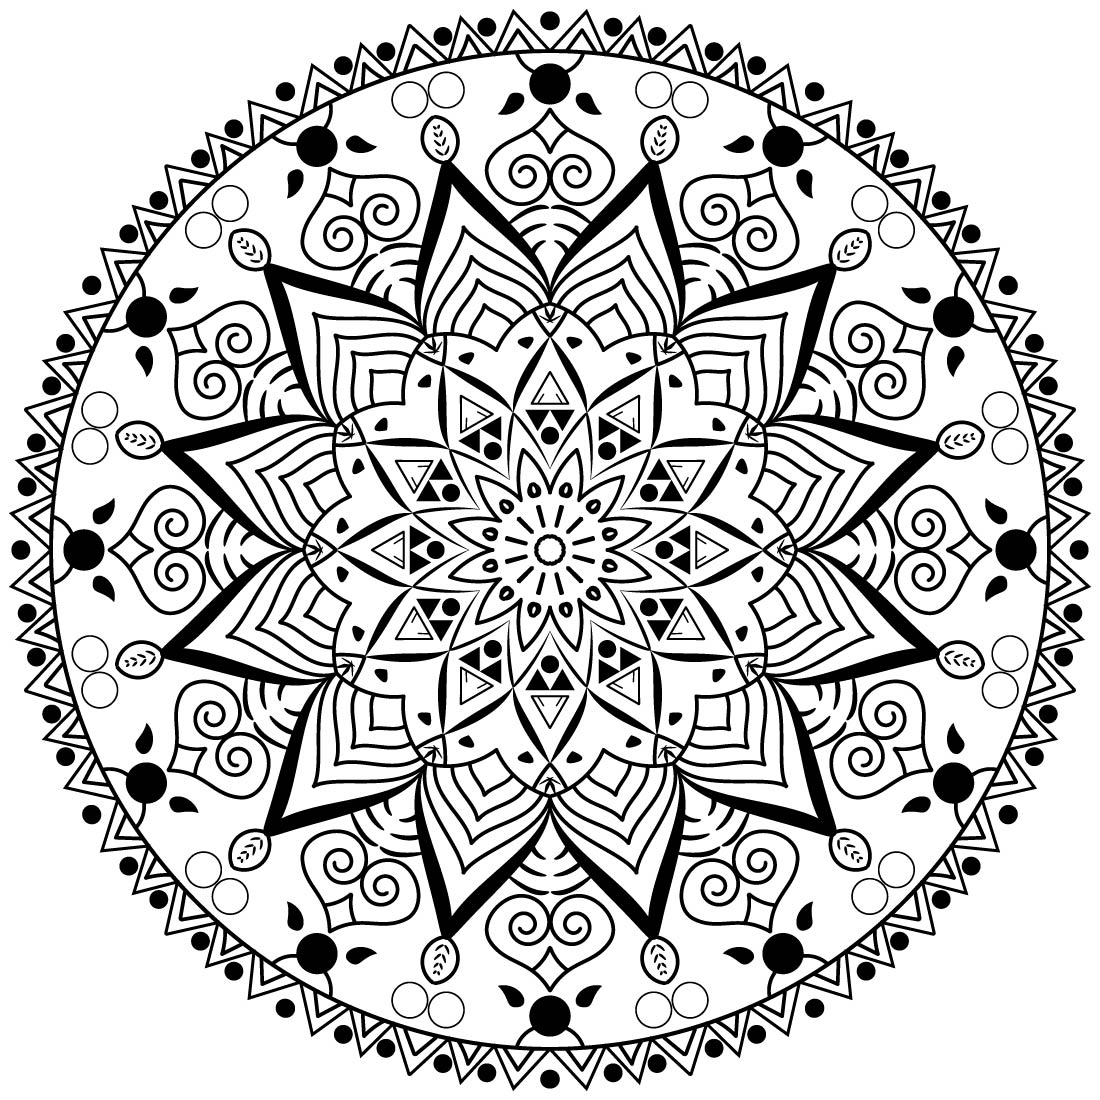 Image with wonderful round black mandala isolated on white background.